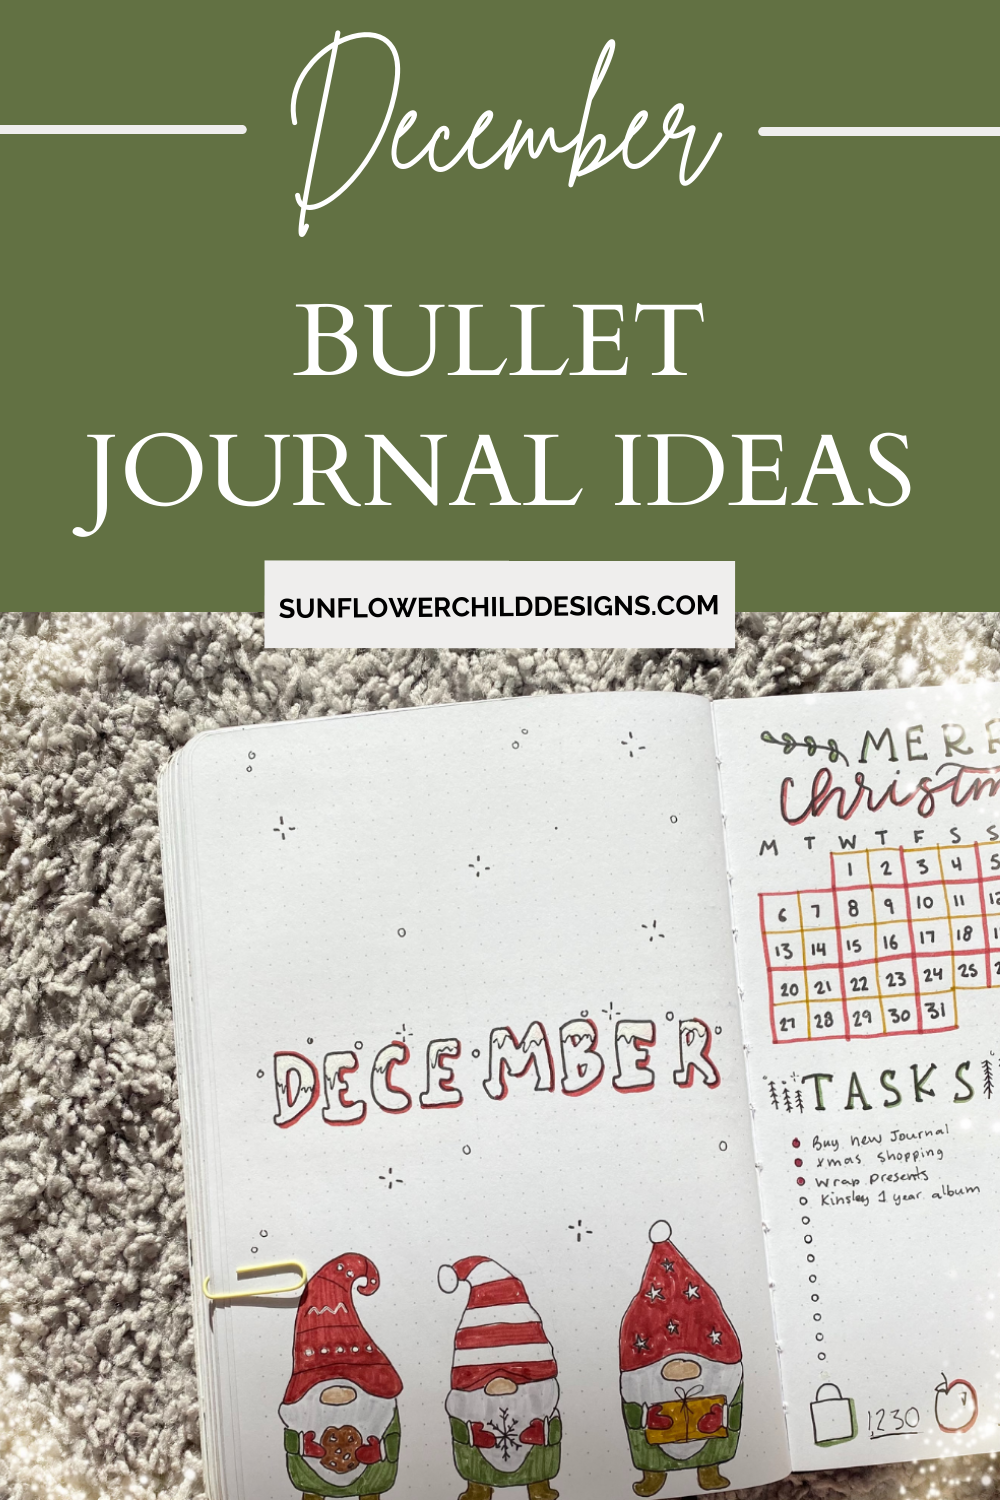 December-bullet-journal-ideas-1.png